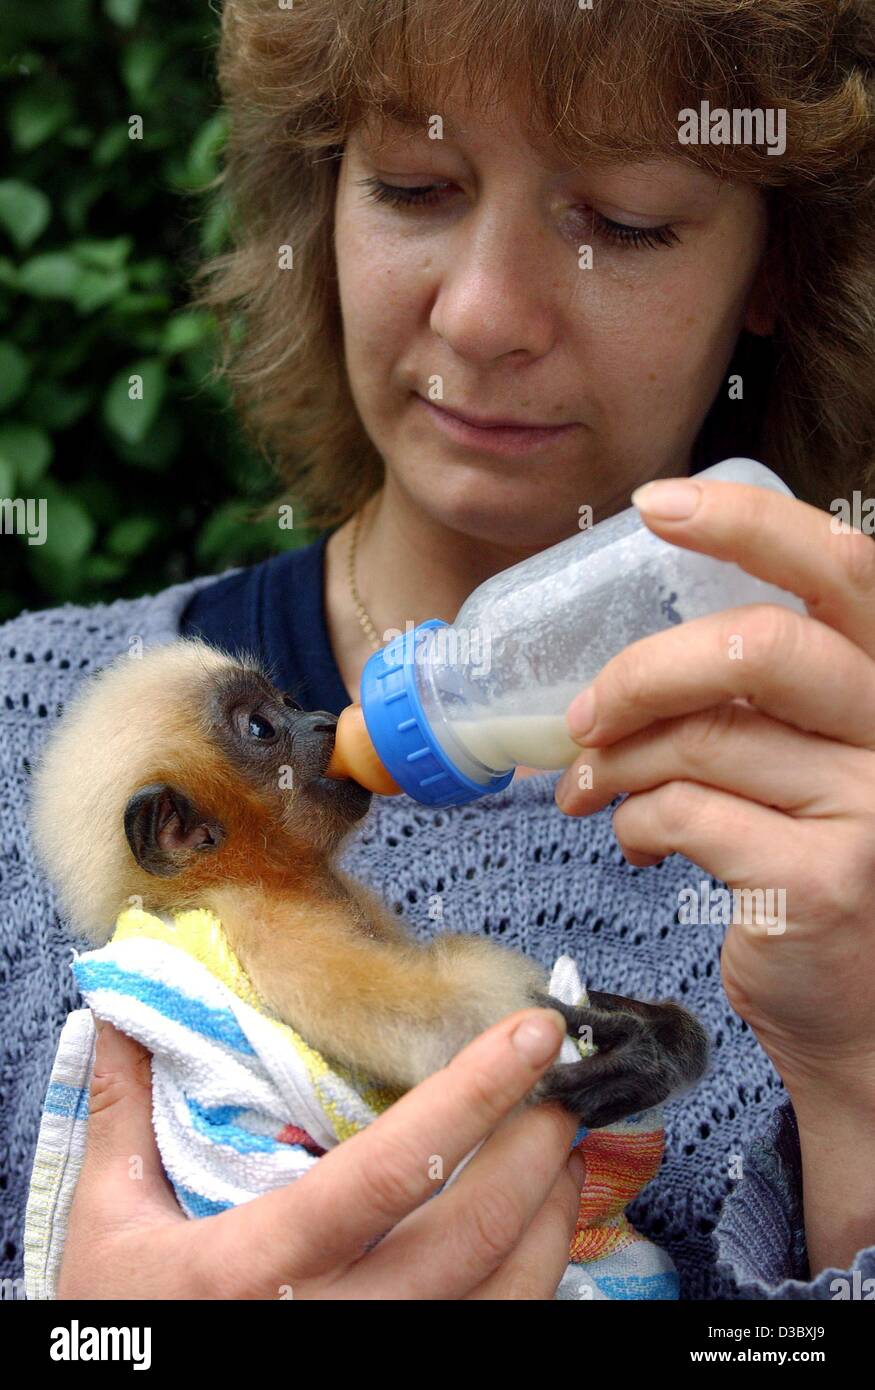 (Dpa) - Lo Zoo keeper Anke Damerau alimenta il sette settimane-vecchio gibbone Sammy come un bambino umano nel giardino zoologico in Eberswalde, Germania, 25 luglio 2003. Sammy, nato il 1 giugno, è stata respinta dalla madre dopo la nascita. Foto Stock